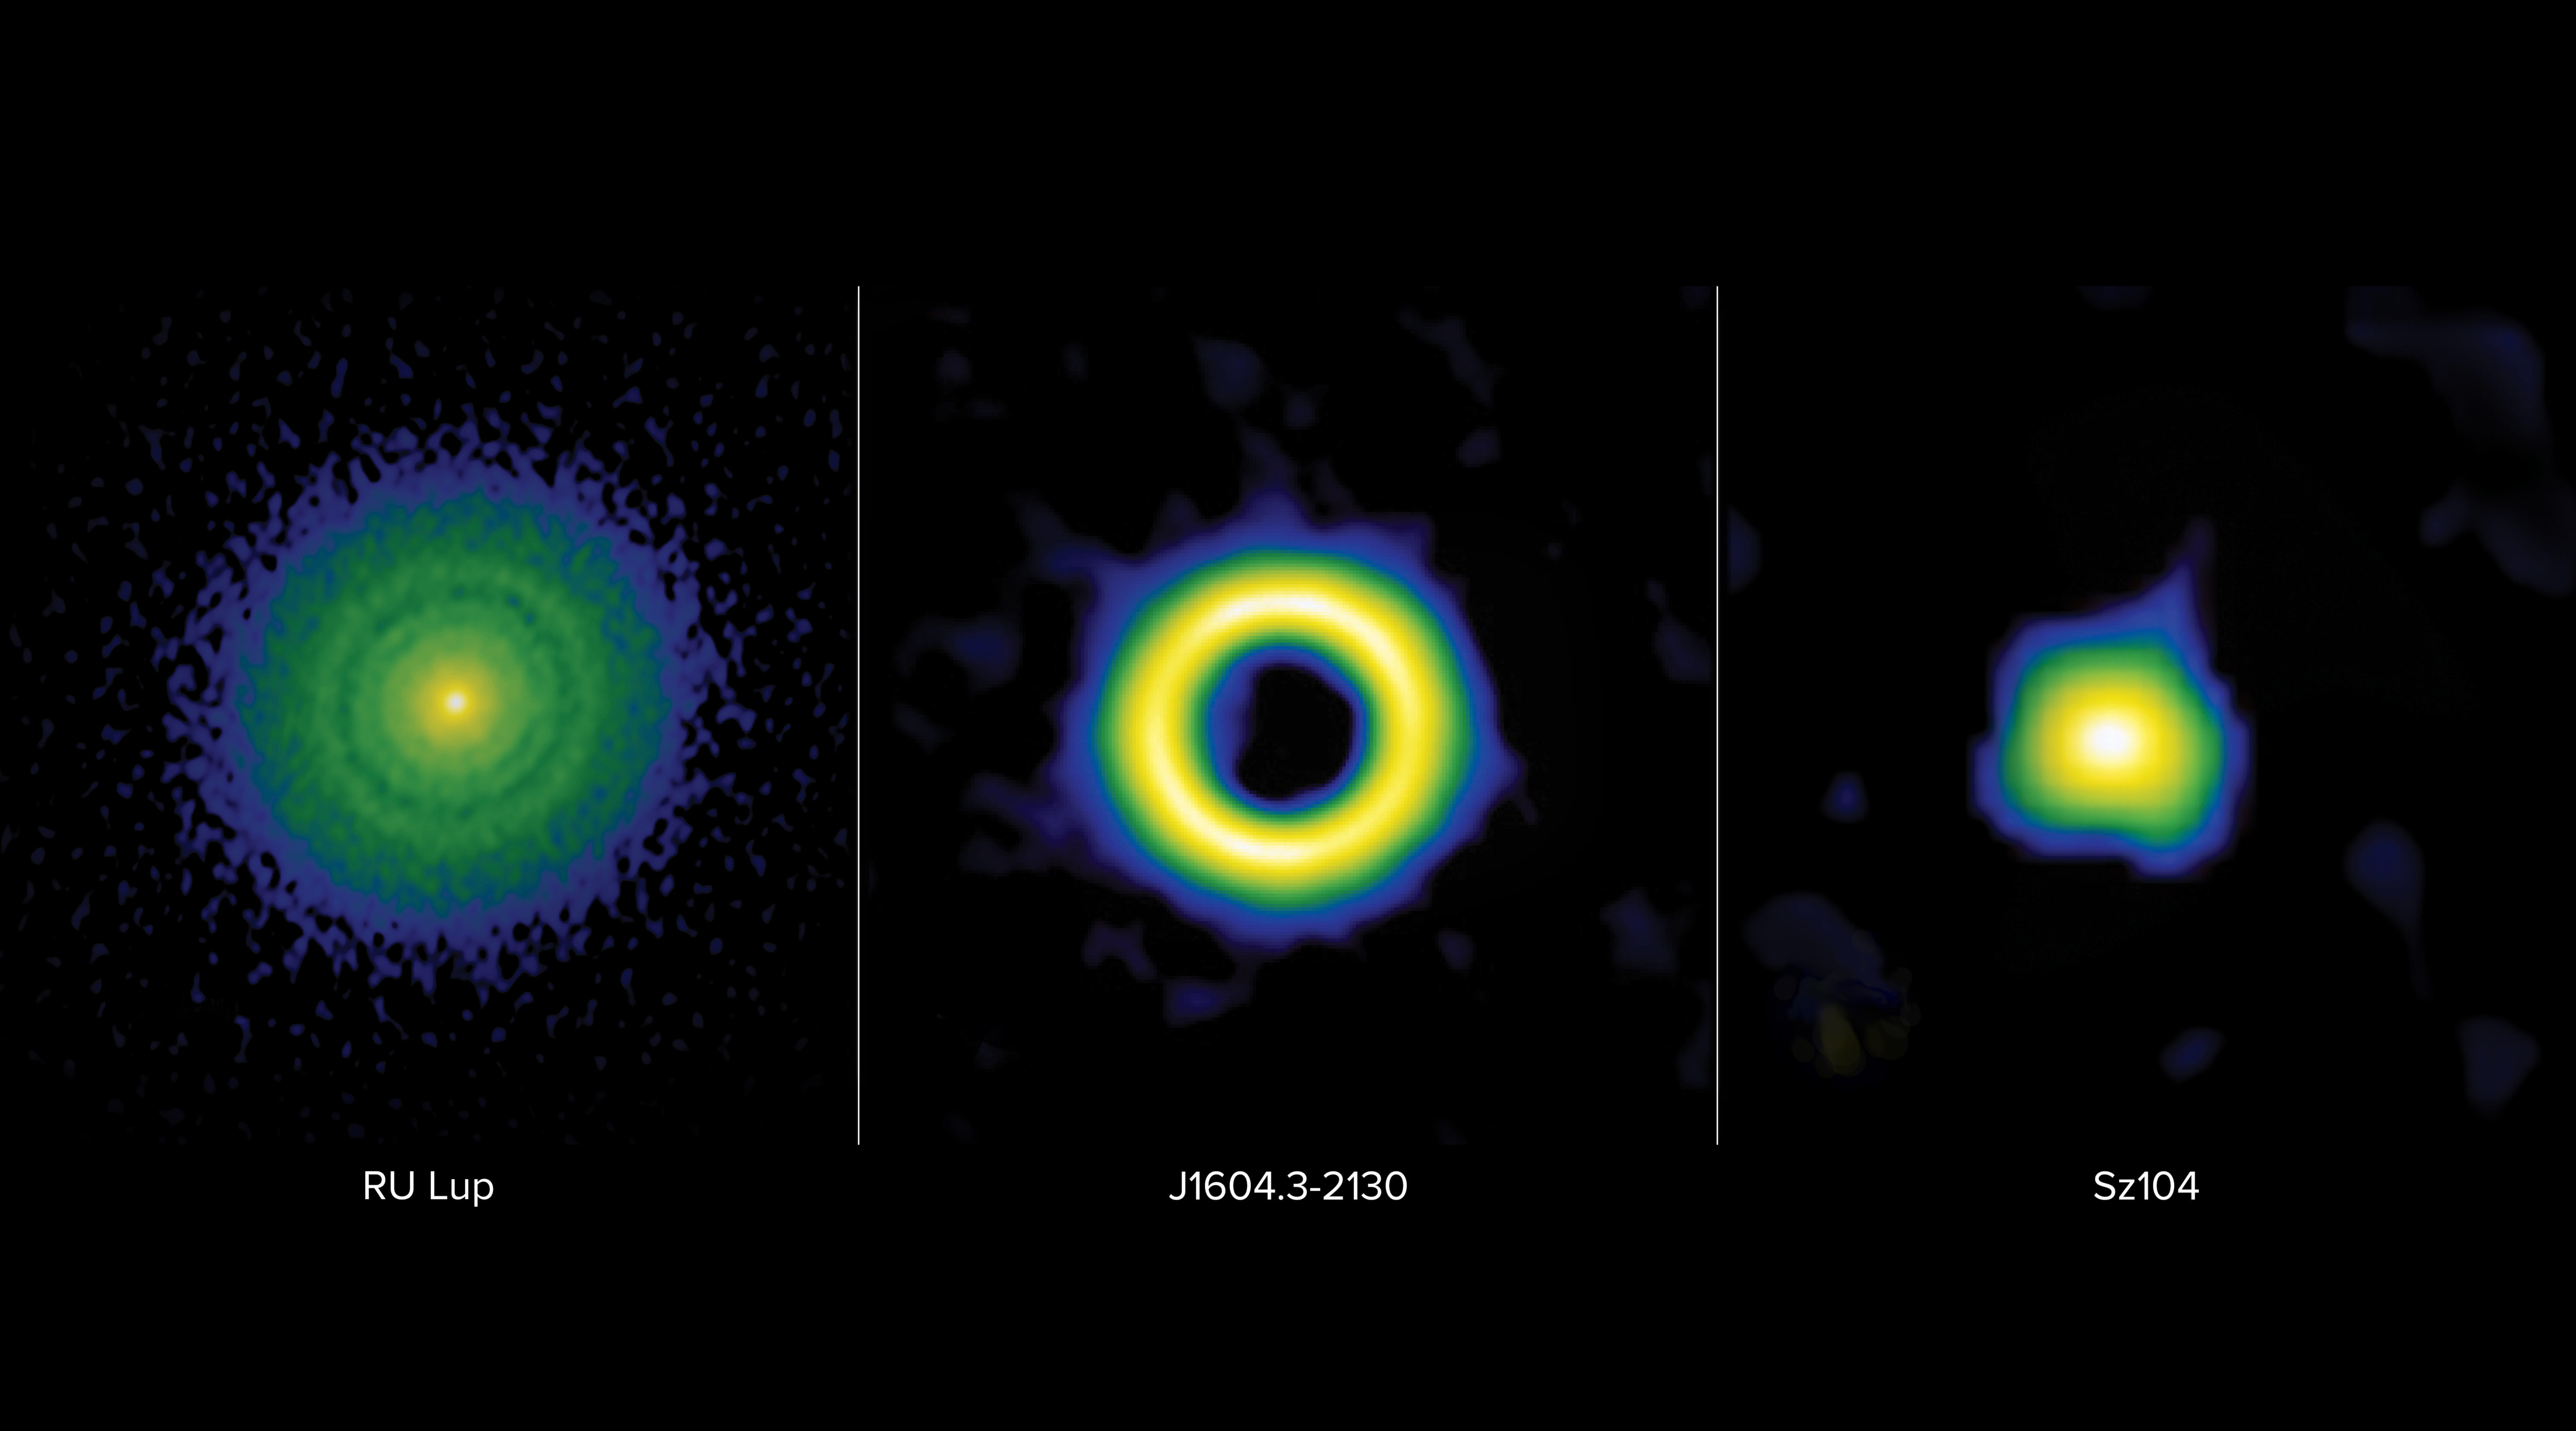 Los discos protoplanetarios se clasifican en tres categorías principales: transición, anillo o extendido. Estas imágenes en falso color del Atacama Large Millimeter/submillimeter Array (ALMA) muestran estas clasificaciones en marcado contraste. A la izquierda: el disco anular de RU Lup se caracteriza por espacios estrechos que se cree que están tallados por planetas gigantes con masas que oscilan entre una masa de Neptuno y una masa de Júpiter. Al medio: el disco de transición de J1604.3-2130 se caracteriza por una gran cavidad interior que se cree que está tallada por planetas más masivos que Júpiter, también conocidos como planetas super-jovianos. A la derecha: se cree que el disco compacto de Sz104 no contiene planetas gigantes, ya que carece de los reveladores surcos y cavidades asociados con la presencia de planetas gigantes. Crédito: ALMA (ESO/NAOJ/NRAO), S. Dagnello (NRAO)